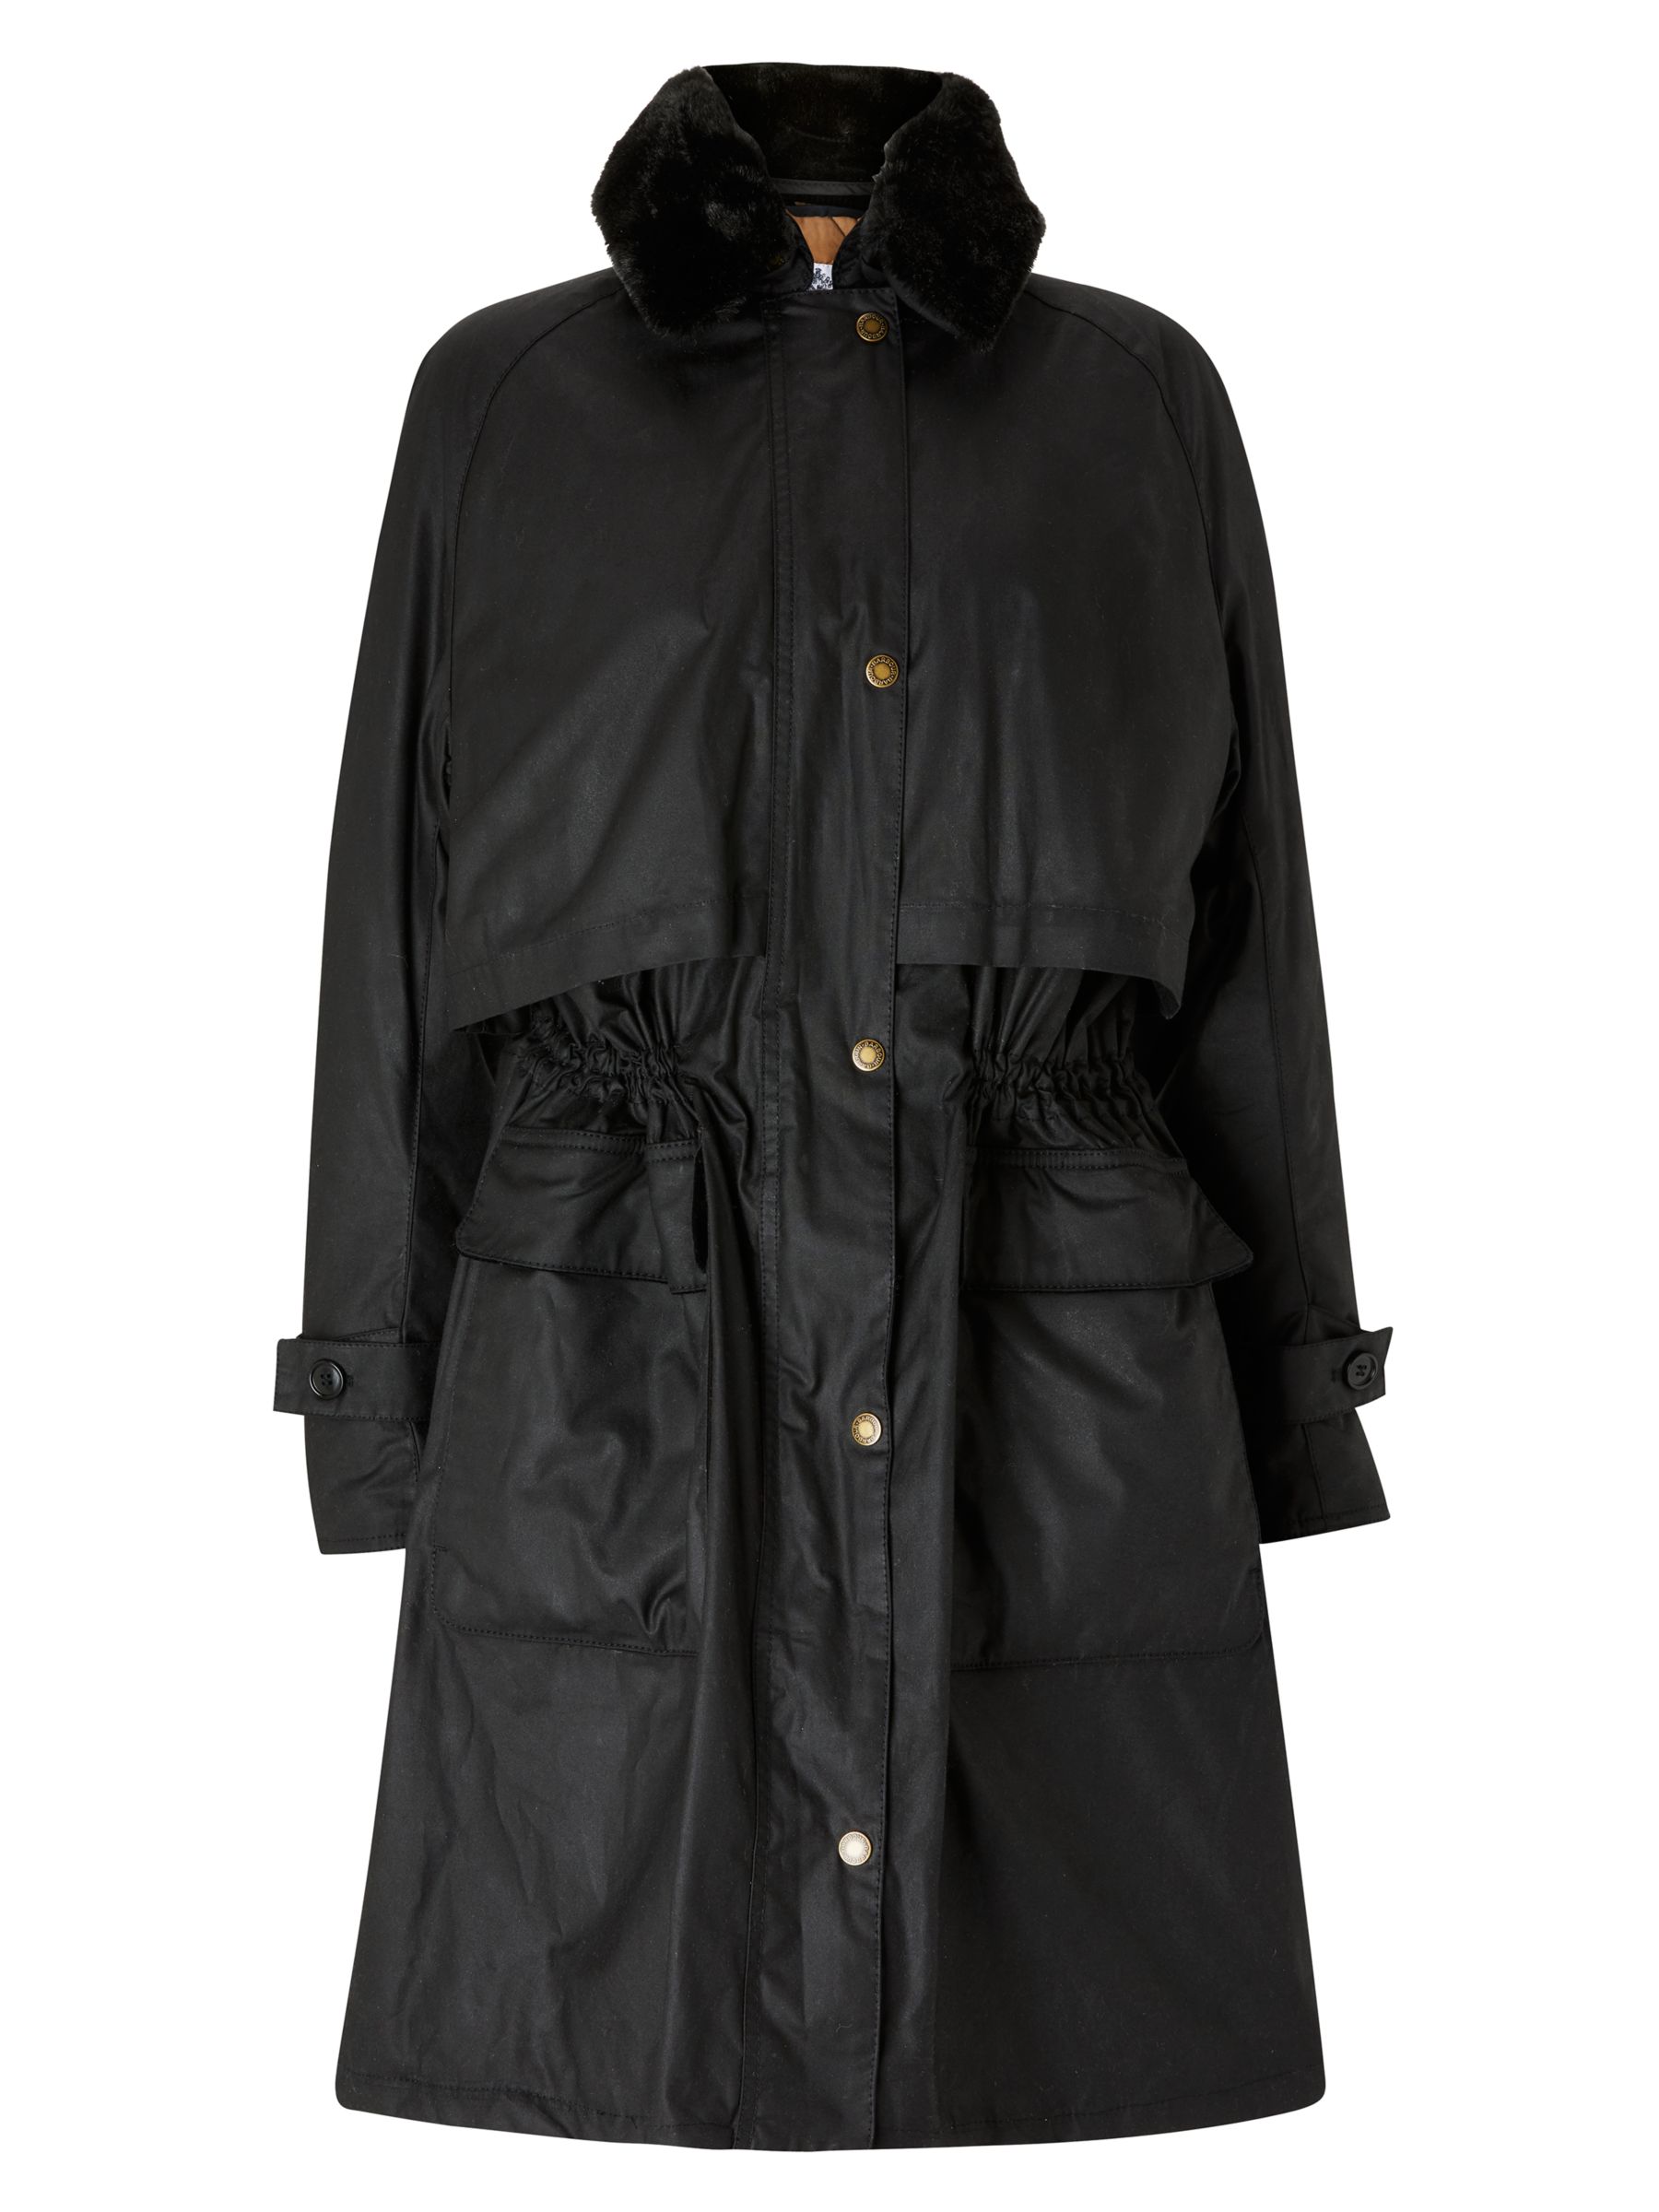 Barbour Floree Wax Coat, Black, 8